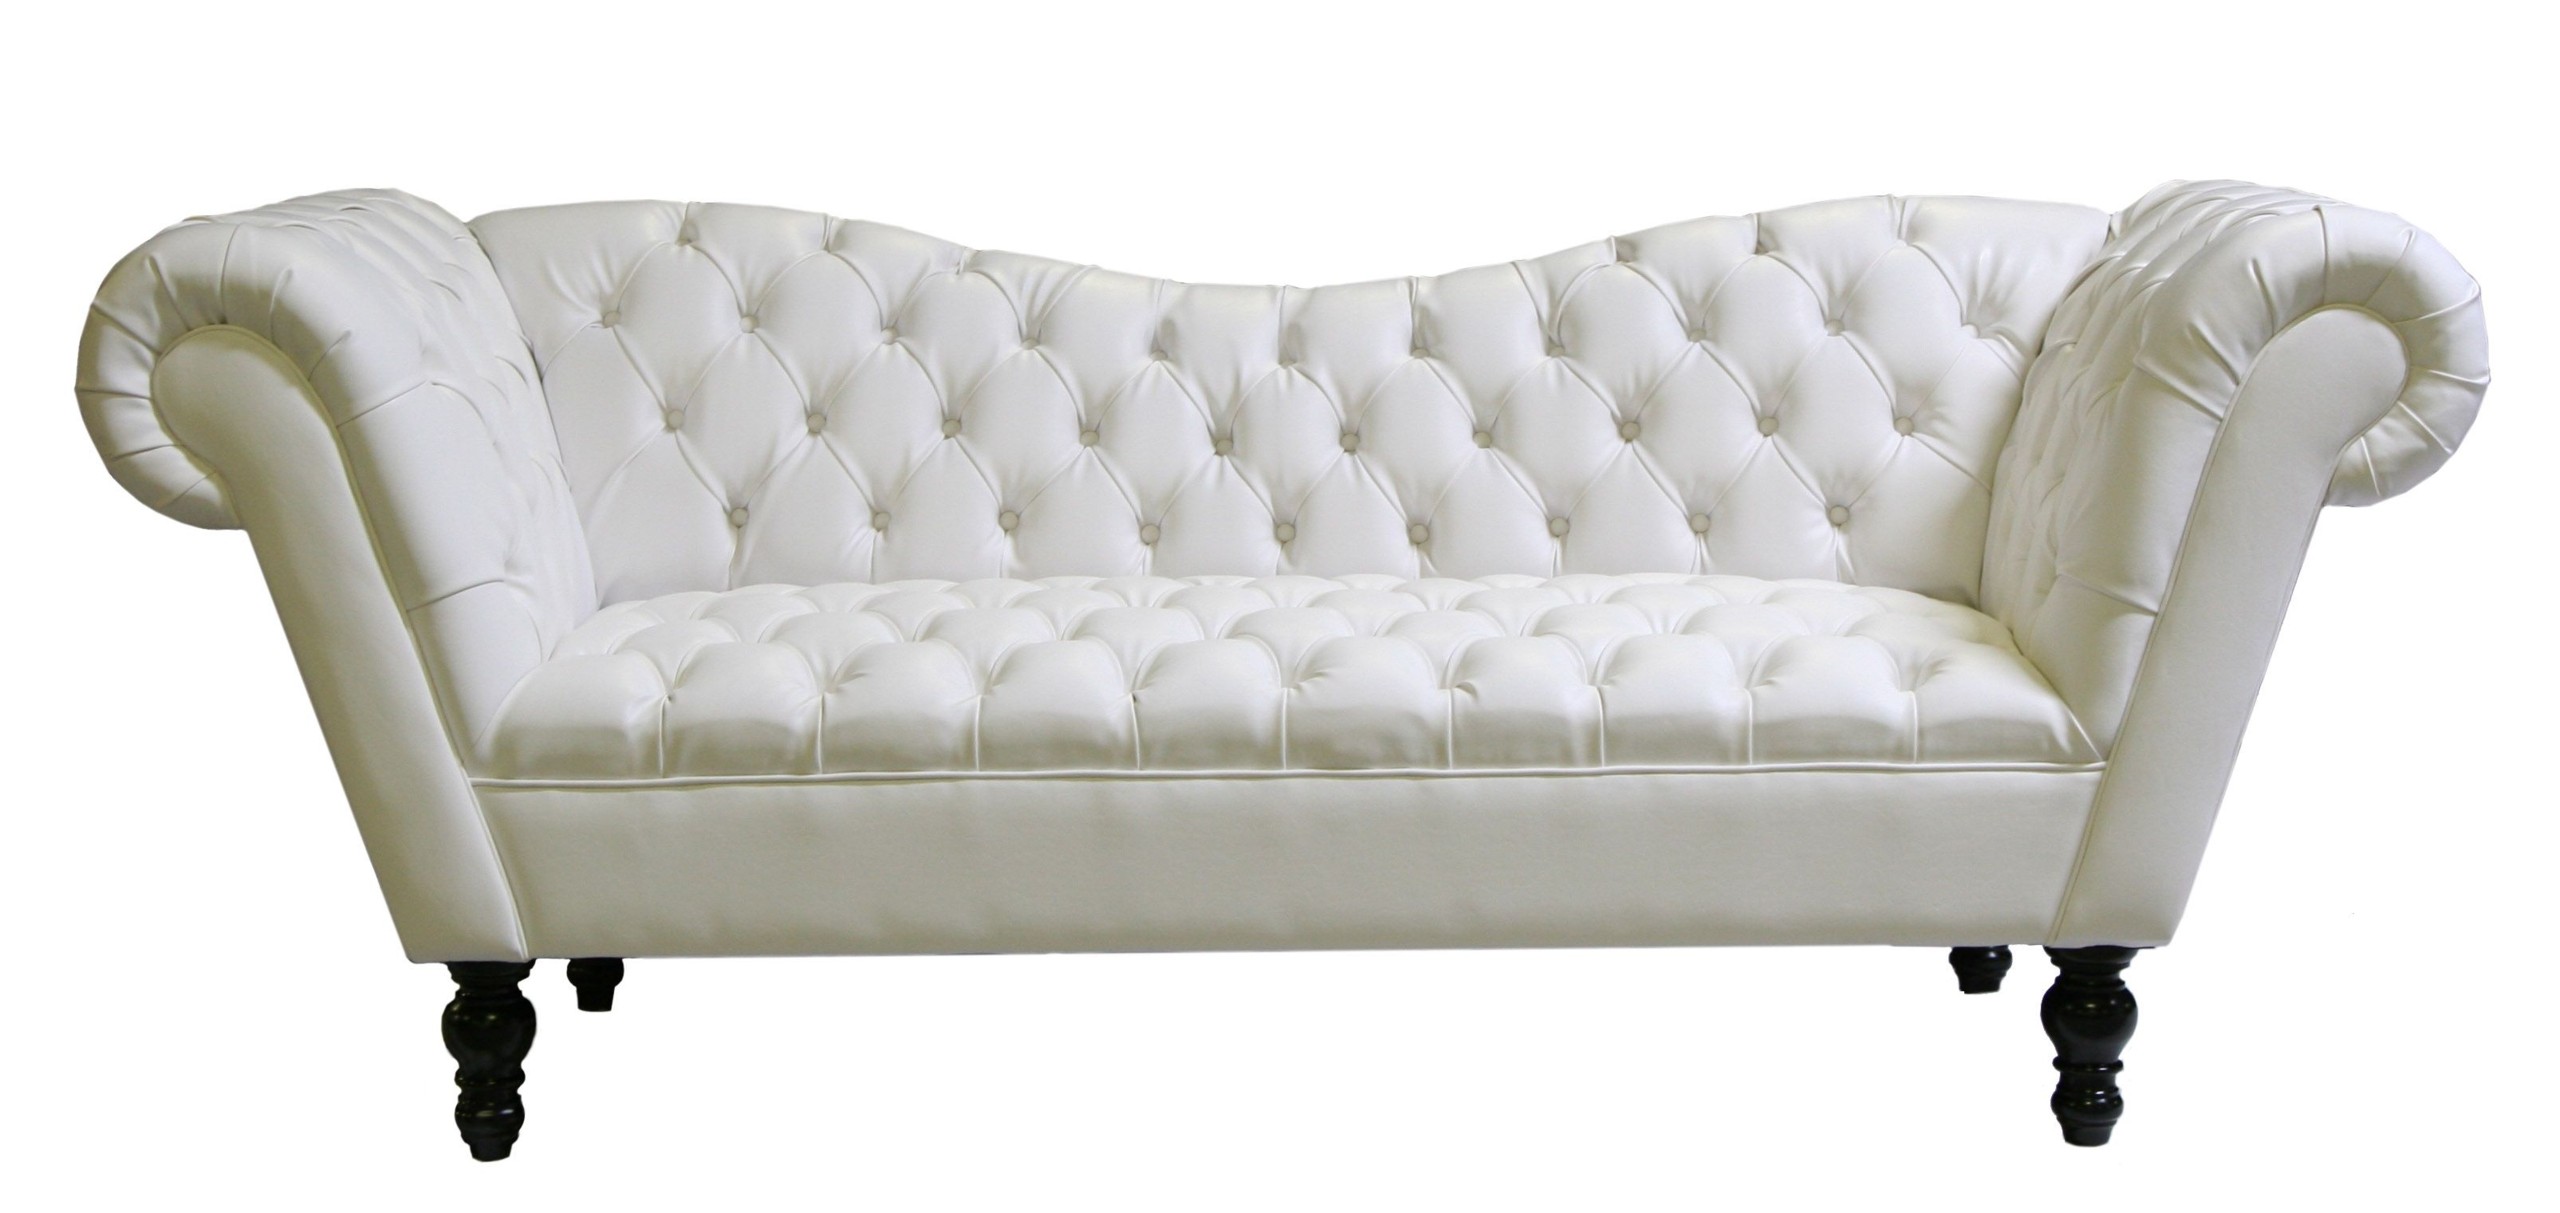 Athena sofa white leather samantha sackler white